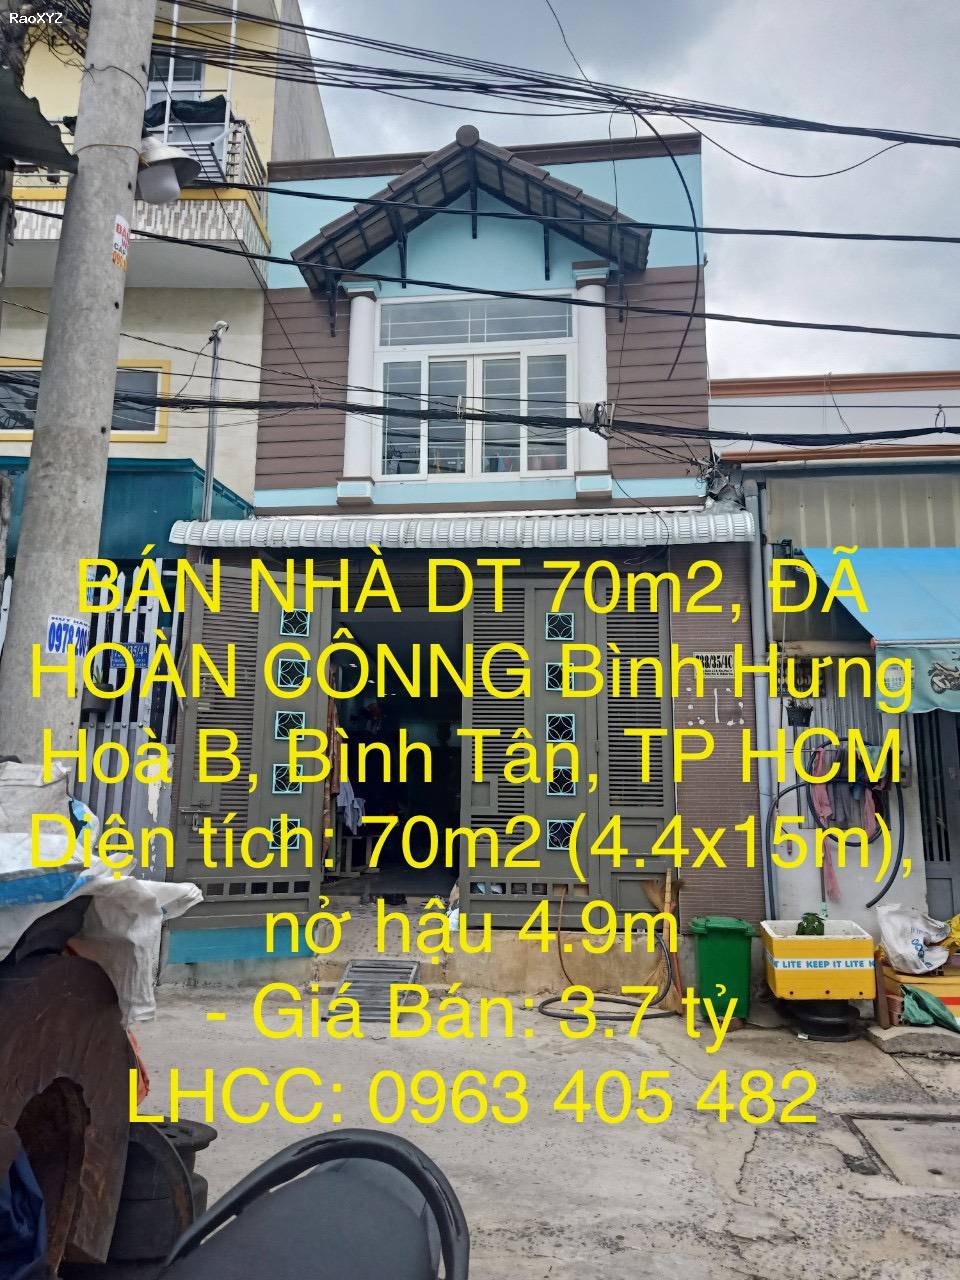 BÁN NHÀ DT 70m2, ĐÃ HOÀN CÔNNG Tại Bình Hưng Hoà B, Quận Bình Tân, TP HCM